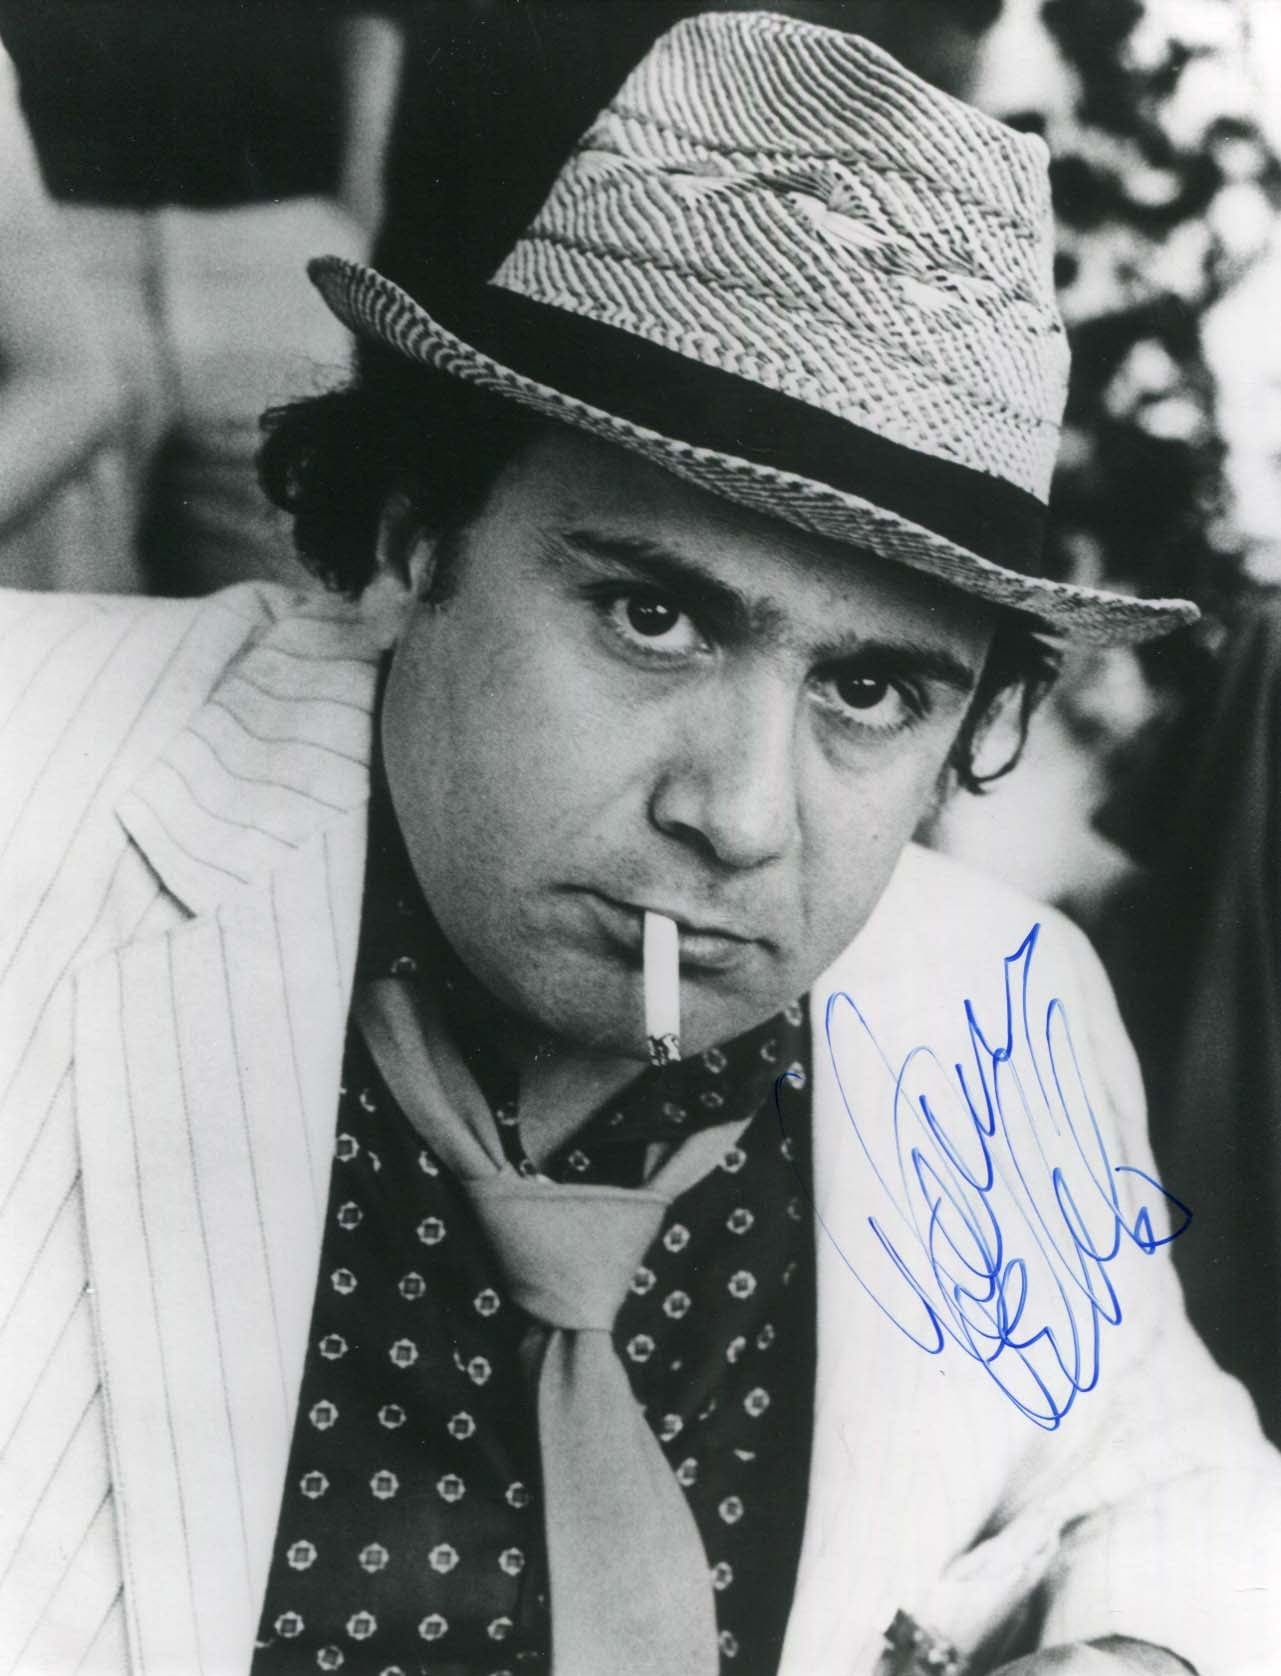 Danny De Vito Autograph